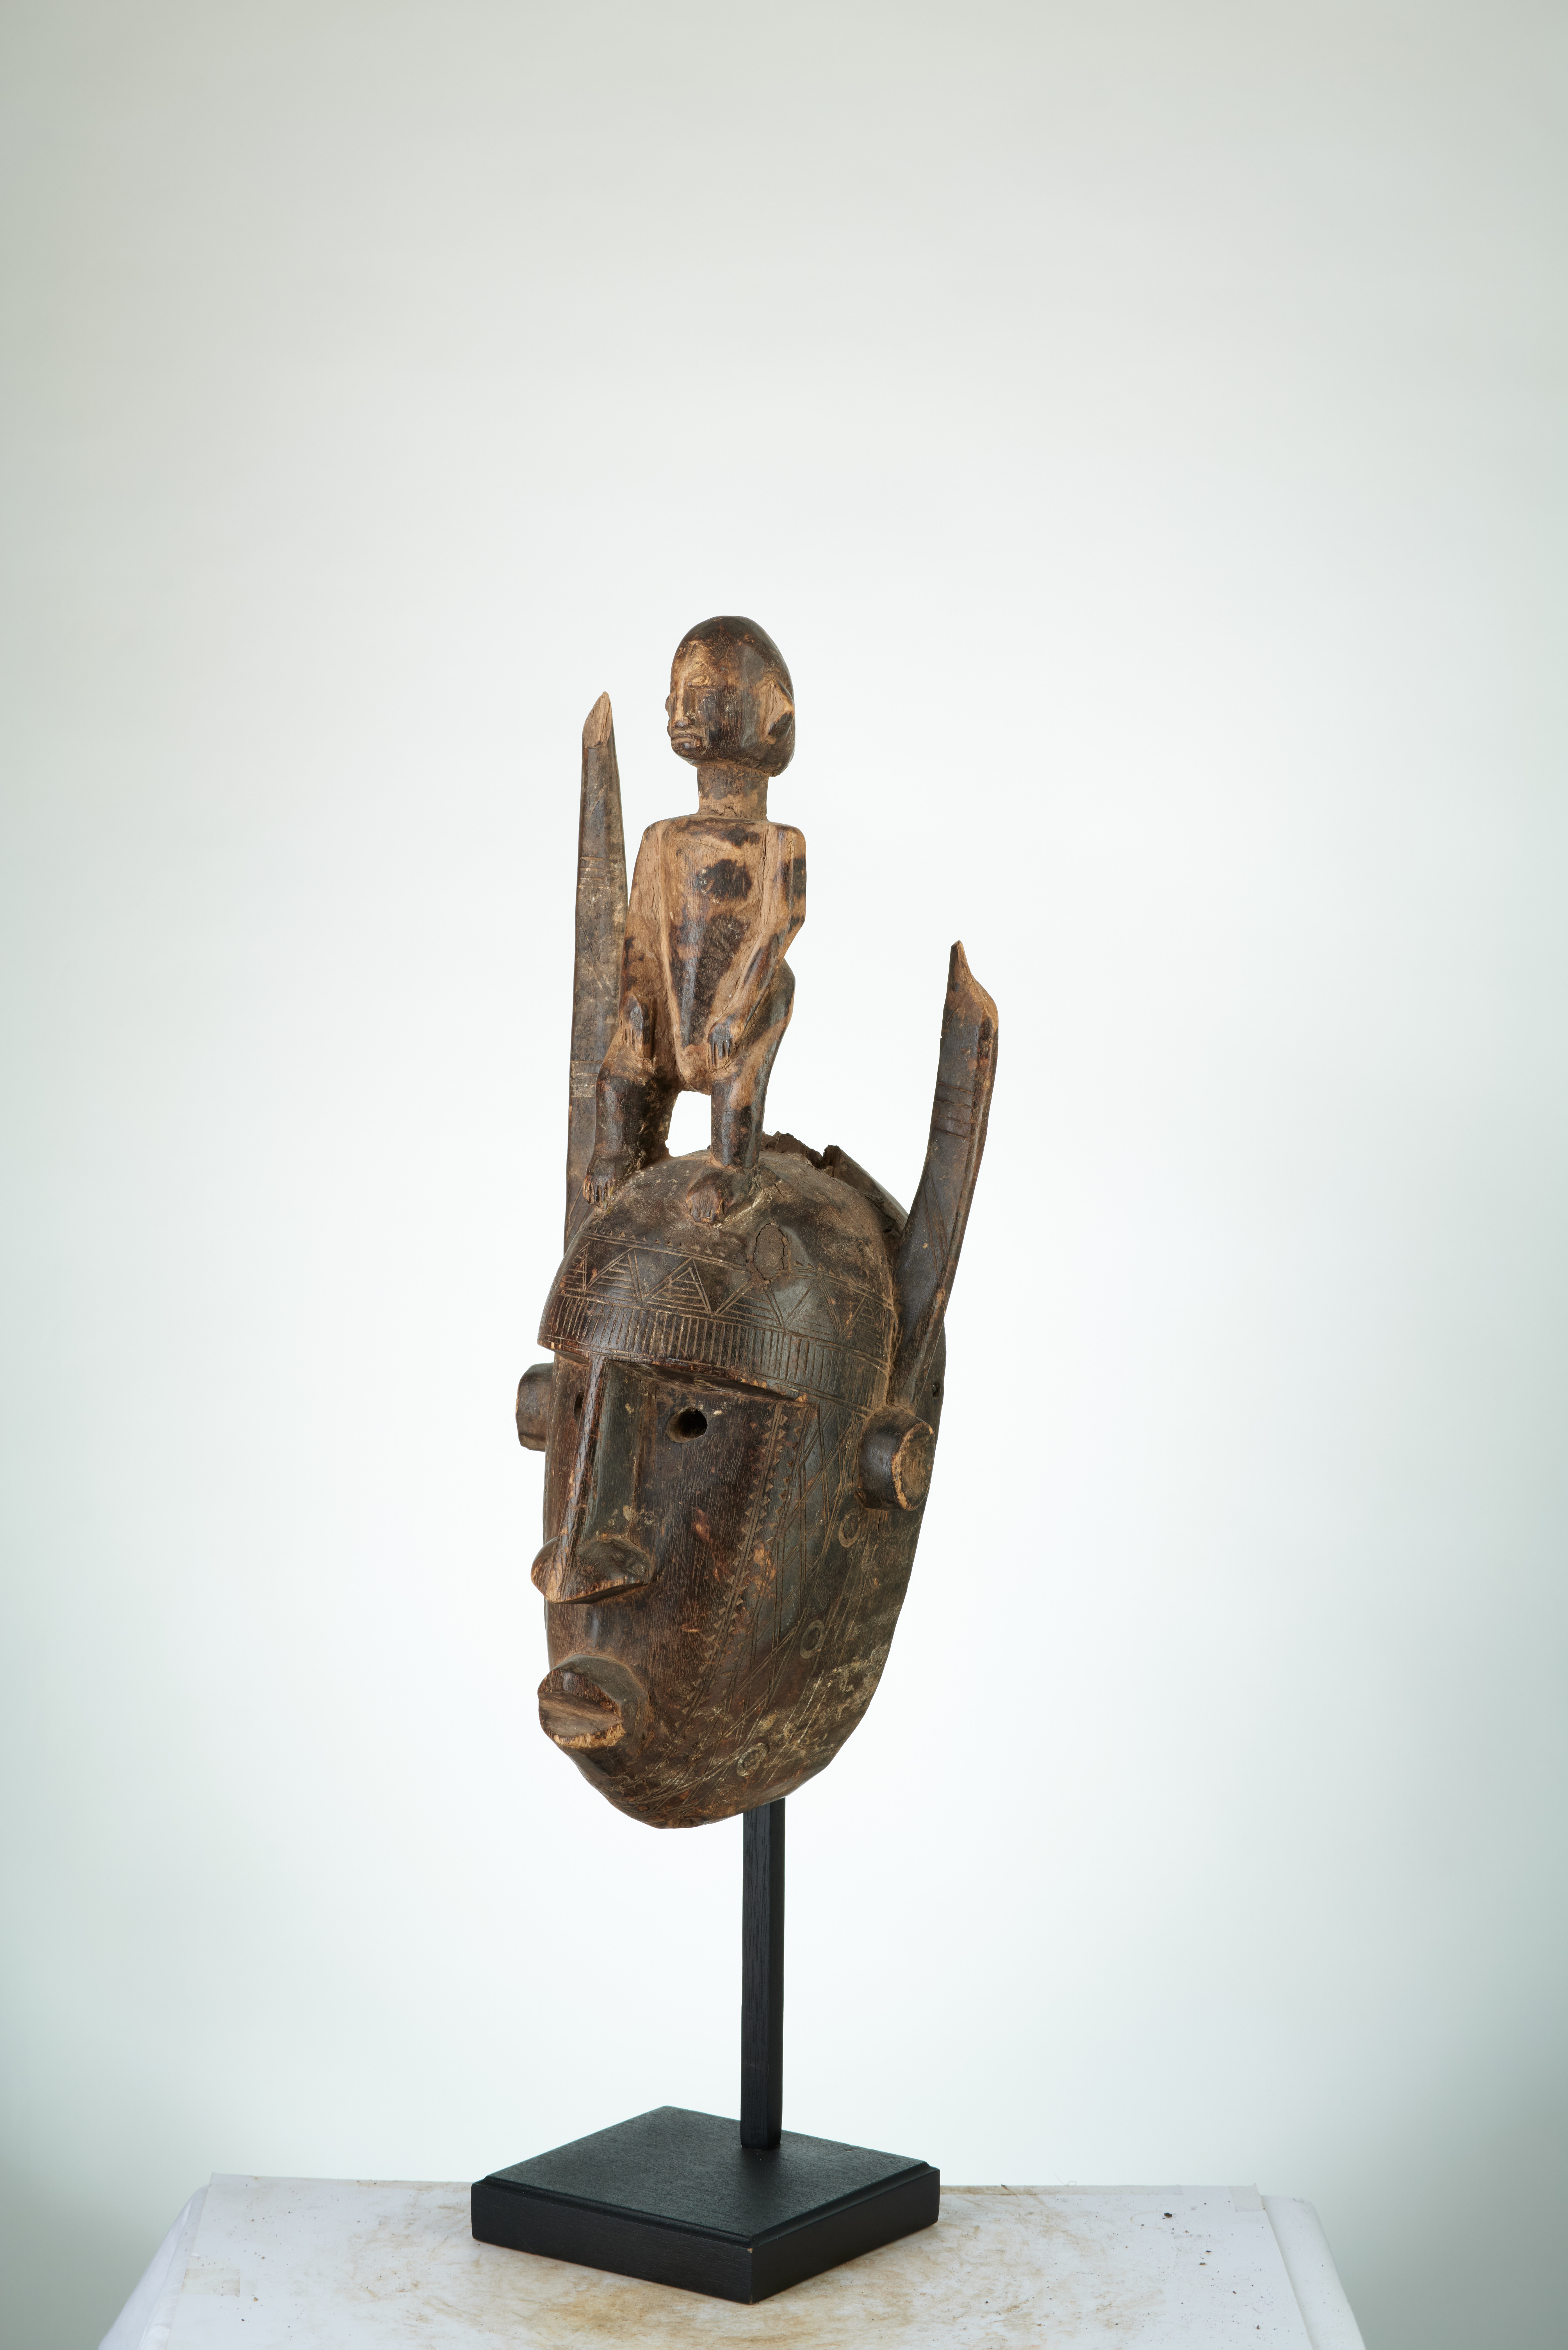 bambara(masque à statue), d`afrique : MALI, statuette bambara(masque à statue), masque ancien africain bambara(masque à statue), art du MALI - Art Africain, collection privées Belgique. Statue africaine de la tribu des bambara(masque à statue), provenant du MALI, 1856:Très beau masque Bambara portant un personnage audessus entre deux cornes et ayant subi des libations.Masque avec des scarifications sur le front et dans le visage.
H.52cm.(col Simon Duchatel de la Howarderie)
1ère moitié du 20eme sc.

Heel mooi Bambara masker met een man bovenop tussen twee horens.Het masker heeft offrandes 
ondergaan.Het heeft scarificaties op het voorhoofd en in het aangezicht.H.52cm.(Kol.Simon Duchatel de la Howarderie.)1ste helft 20ste eeuw.. art,culture,masque,statue,statuette,pot,ivoire,exposition,expo,masque original,masques,statues,statuettes,pots,expositions,expo,masques originaux,collectionneur d`art,art africain,culture africaine,masque africain,statue africaine,statuette africaine,pot africain,ivoire africain,exposition africain,expo africain,masque origina africainl,masques africains,statues africaines,statuettes africaines,pots africains,expositions africaines,expo africaines,masques originaux  africains,collectionneur d`art africain